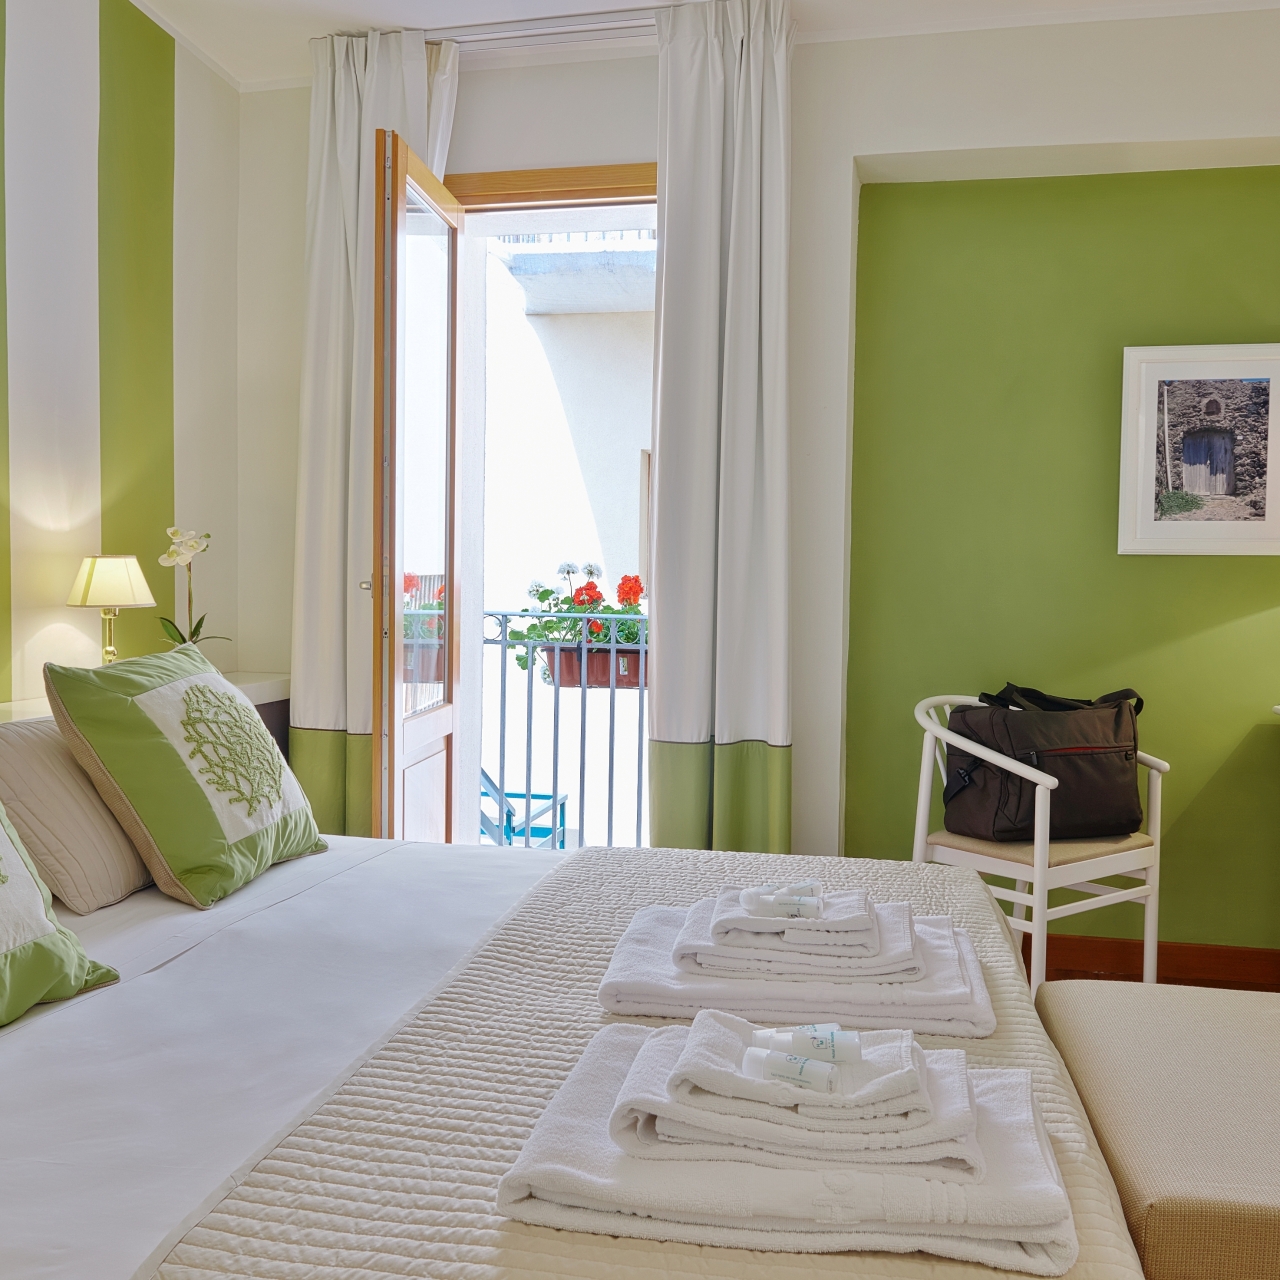 Hotel Al Madarig - 3 HRS star hotel in Castellammare del Golfo (Sicily)